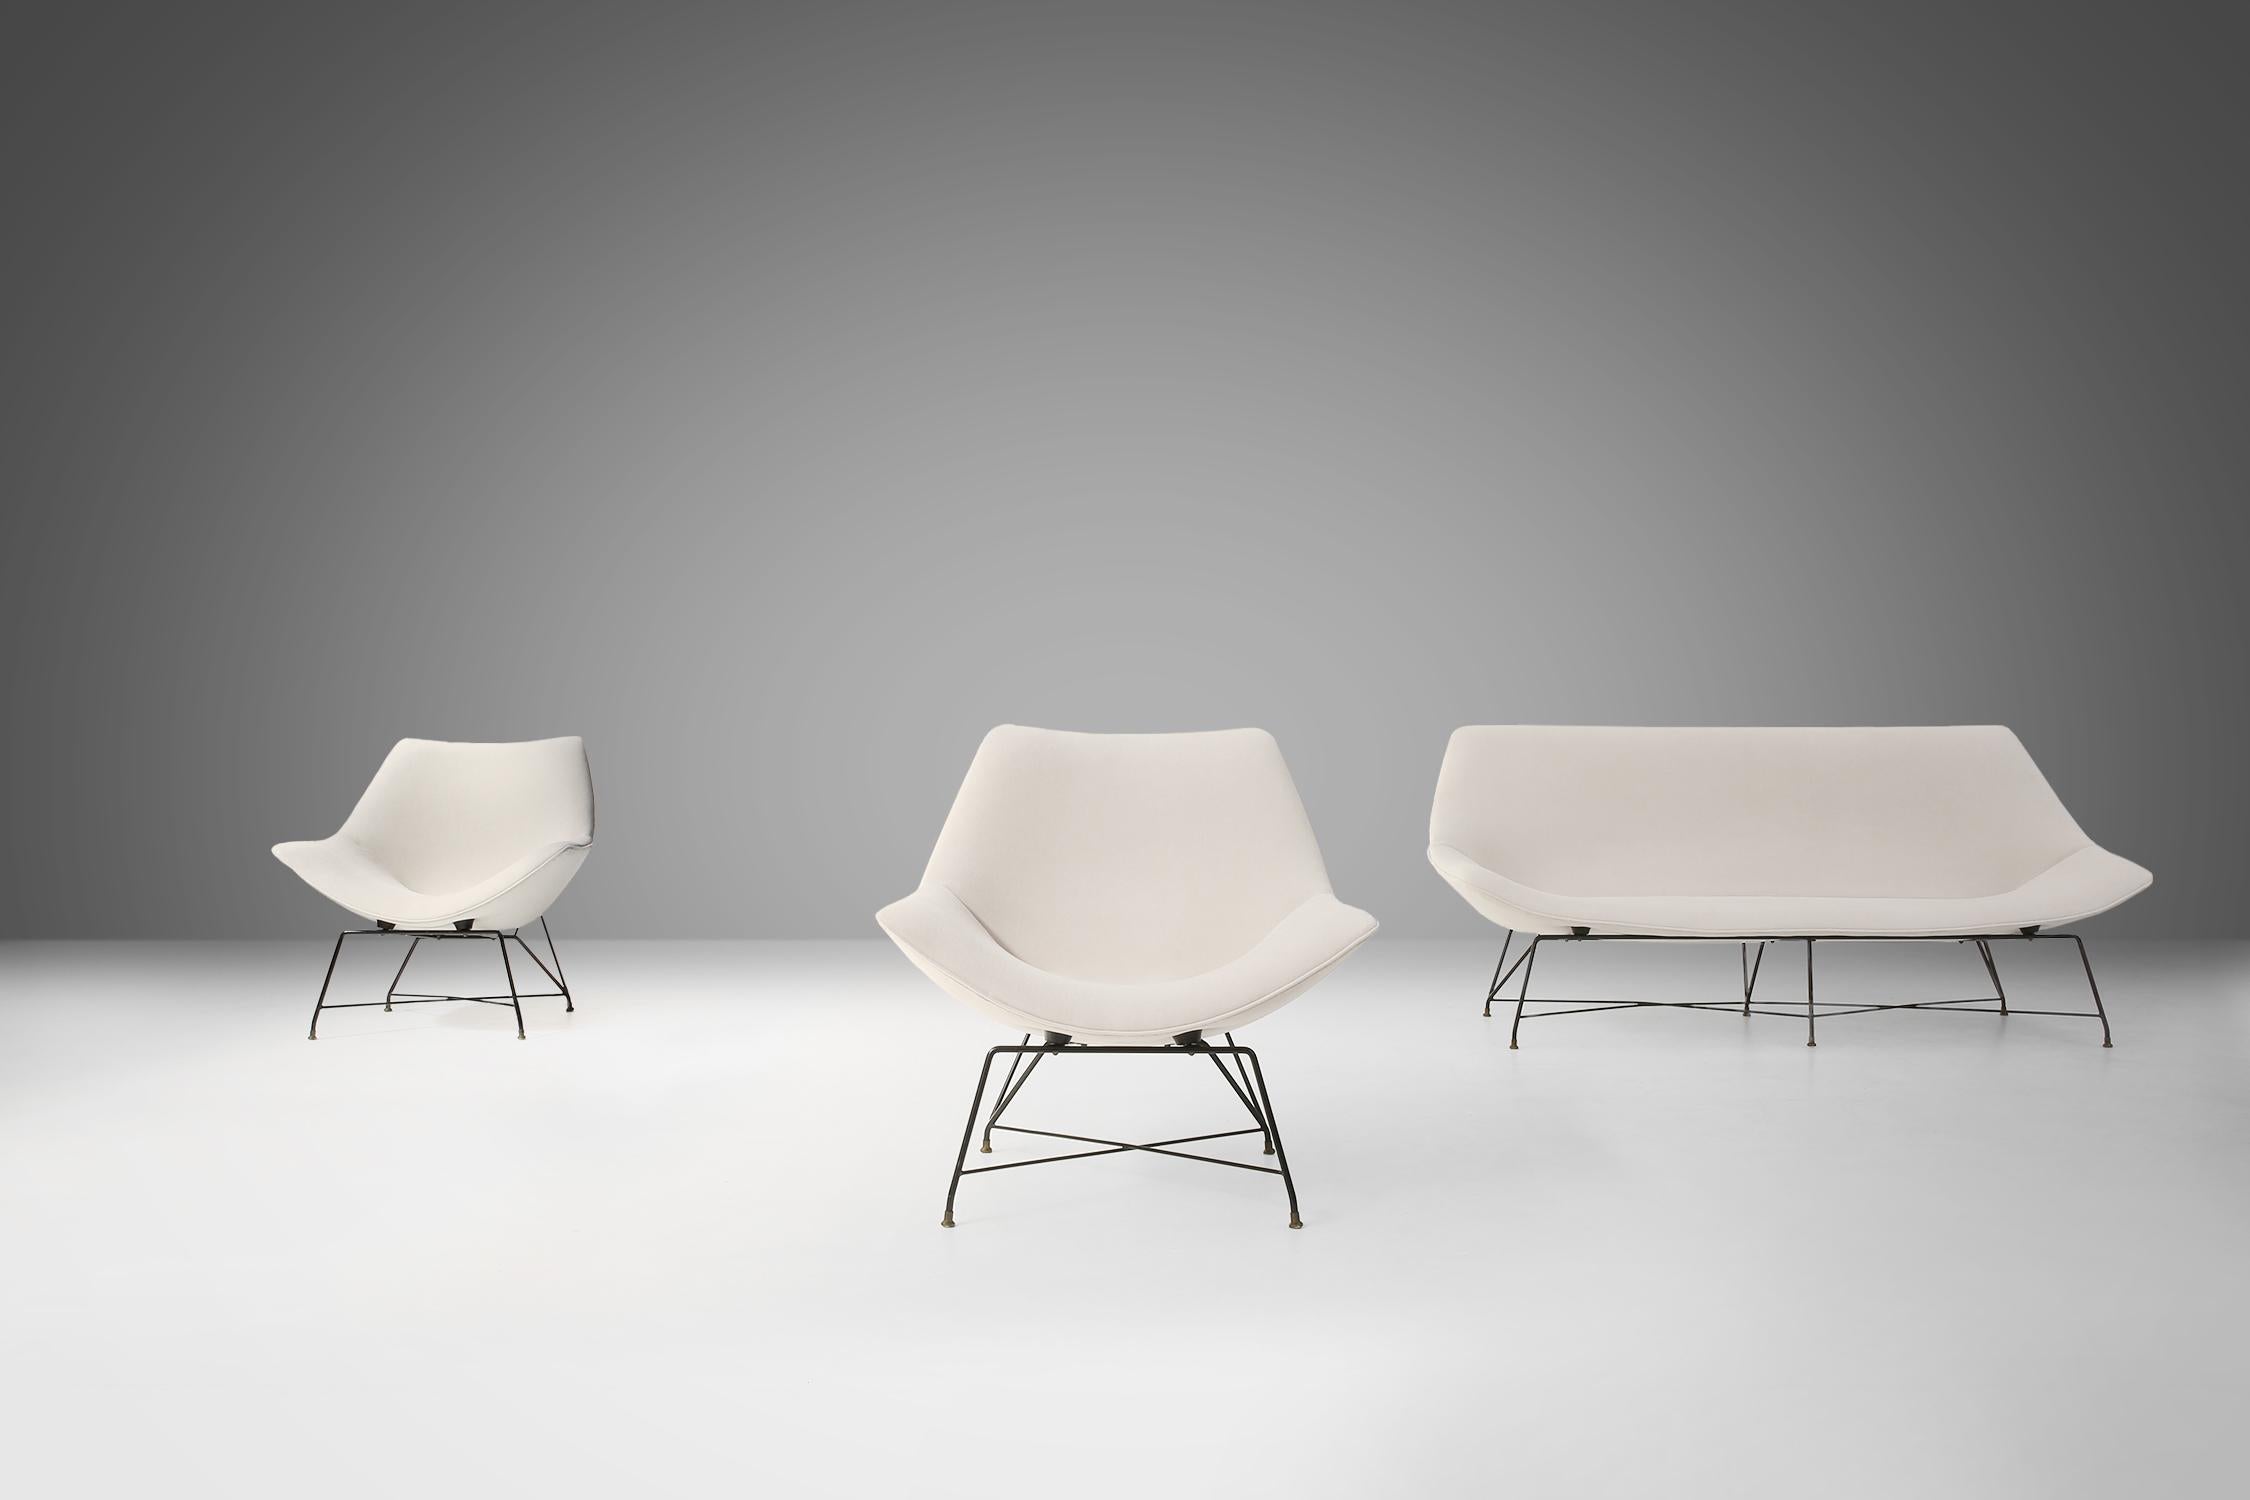 Cet ensemble de fauteuils et de canapé Cosmos du designer Augusto Bozzi pour Saporiti a été conçu en 1954 et constitue un modèle d'élégance, de confort et d'innovation. La collection Cosmos se caractérise par ses formes organiques, ses cadres en